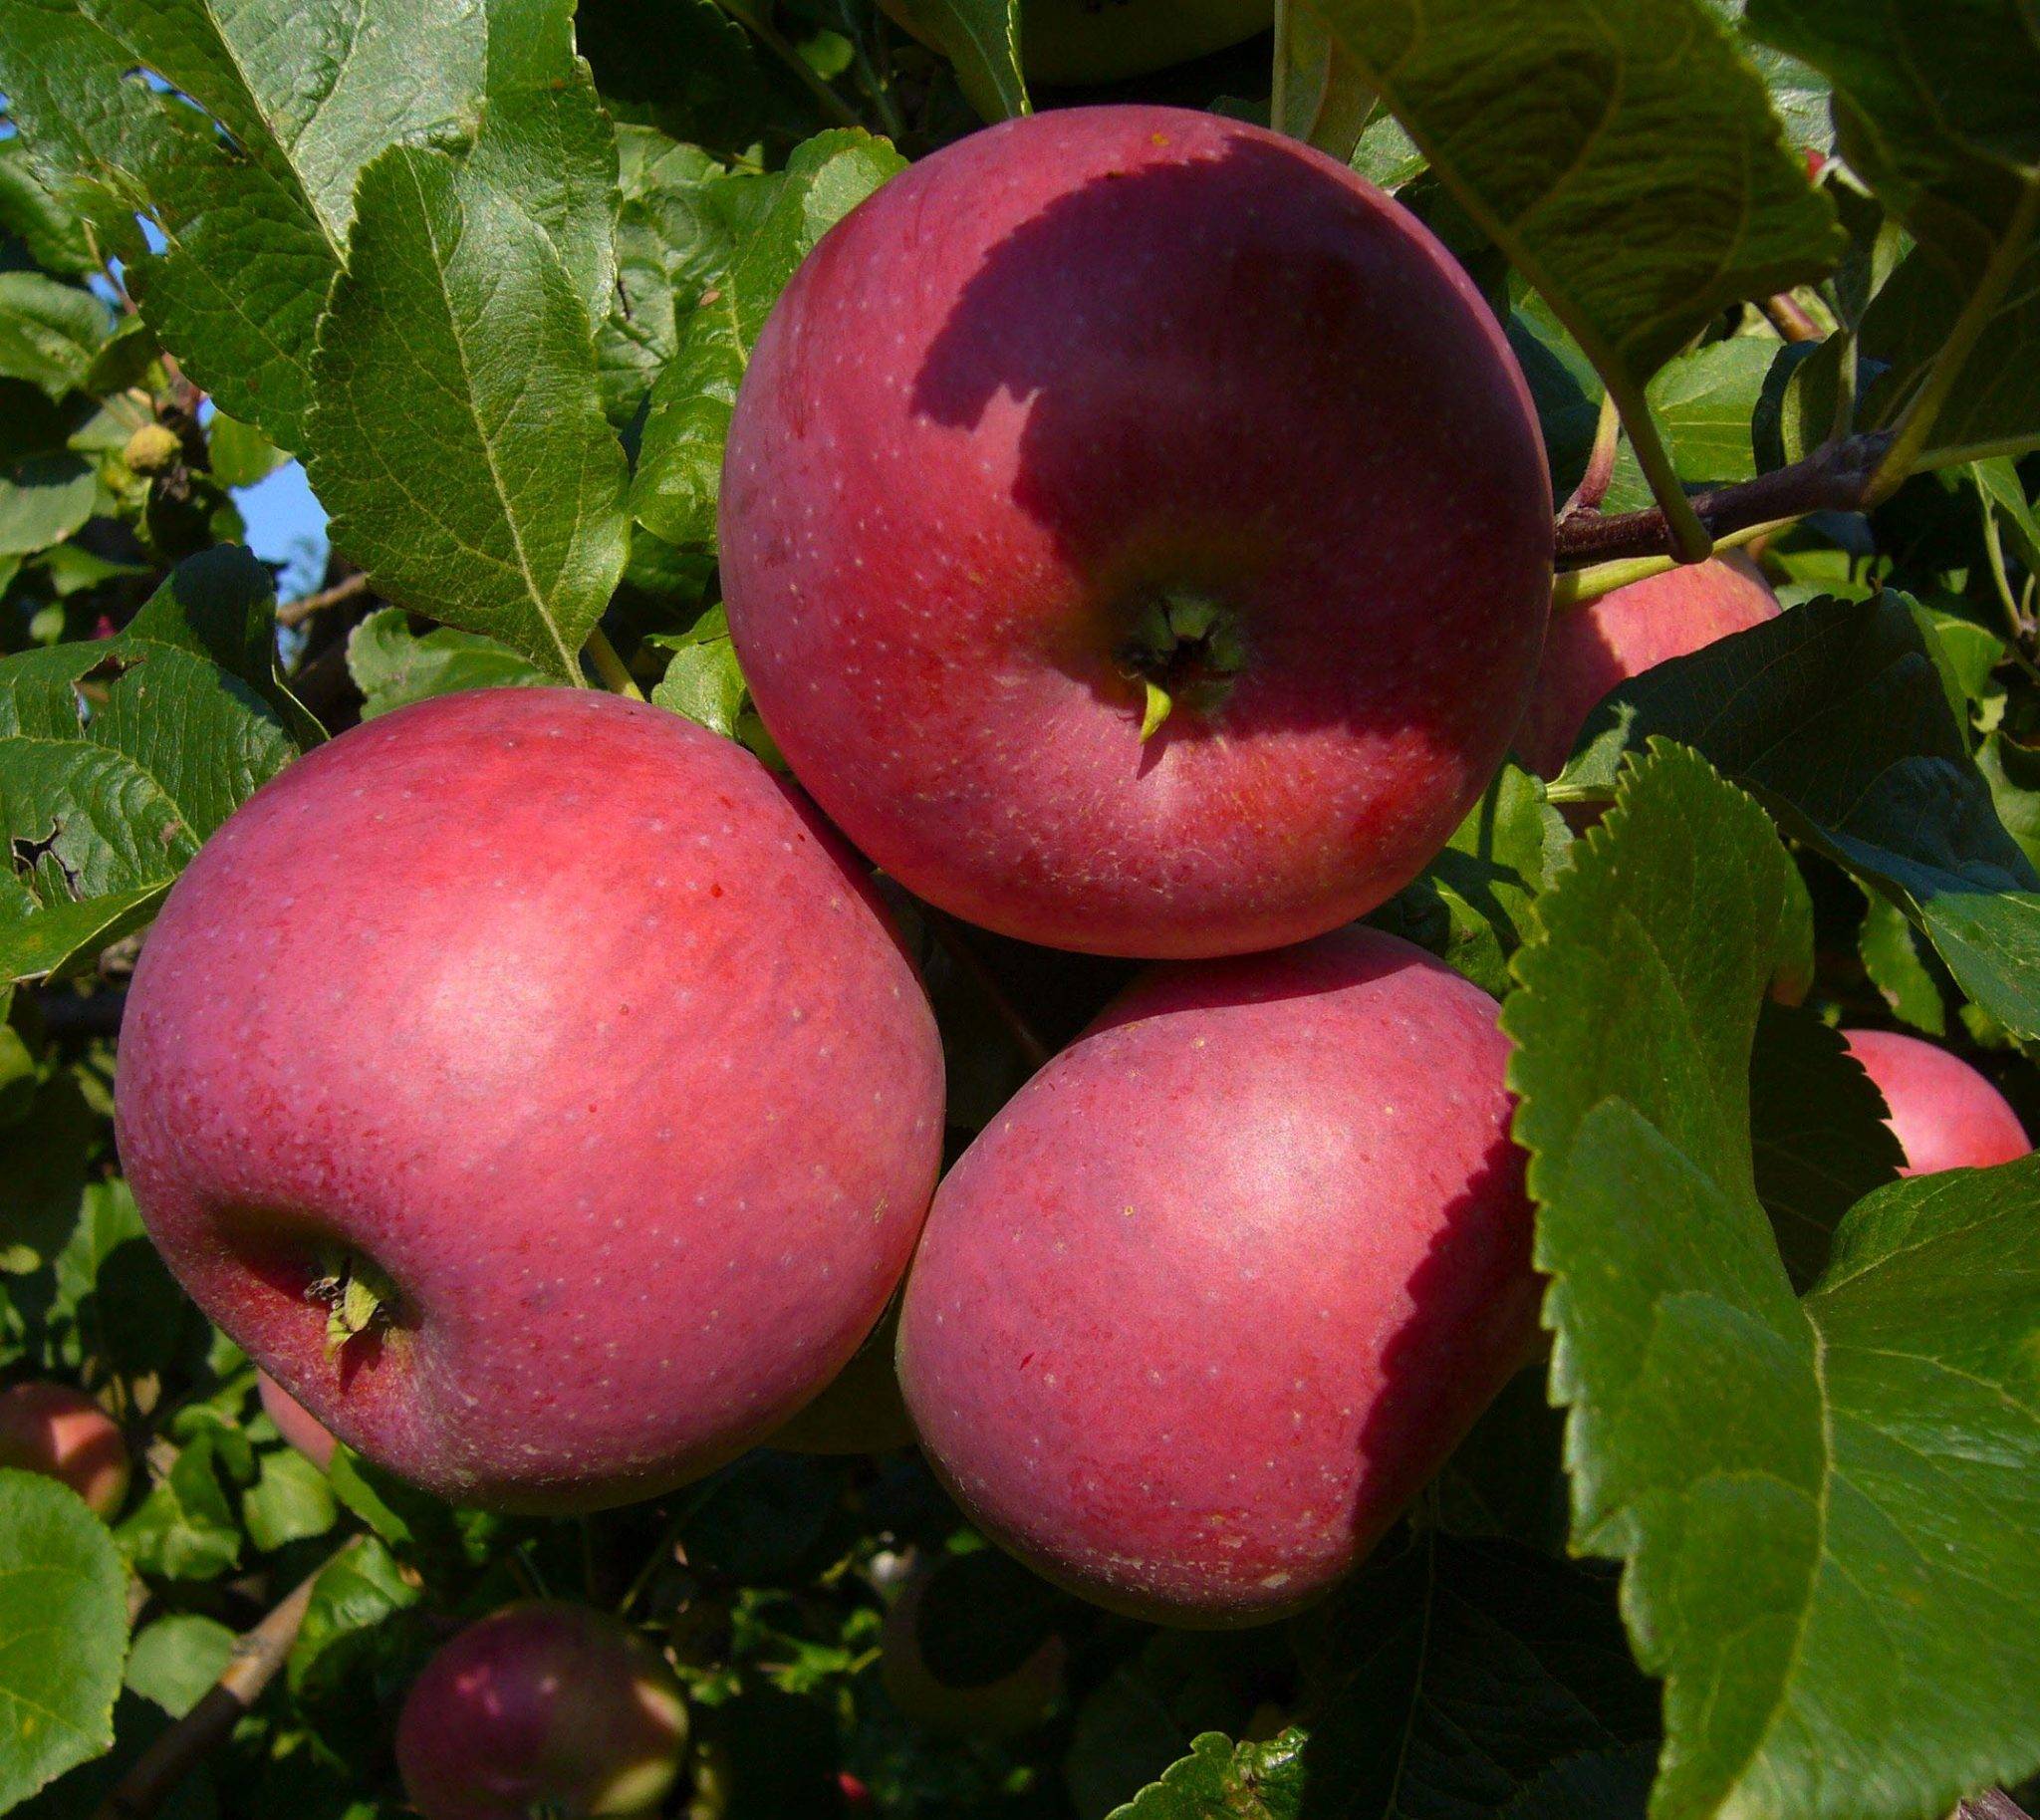 Описание сорта яблони ауксис: фото яблок, важные характеристики, урожайность с дерева